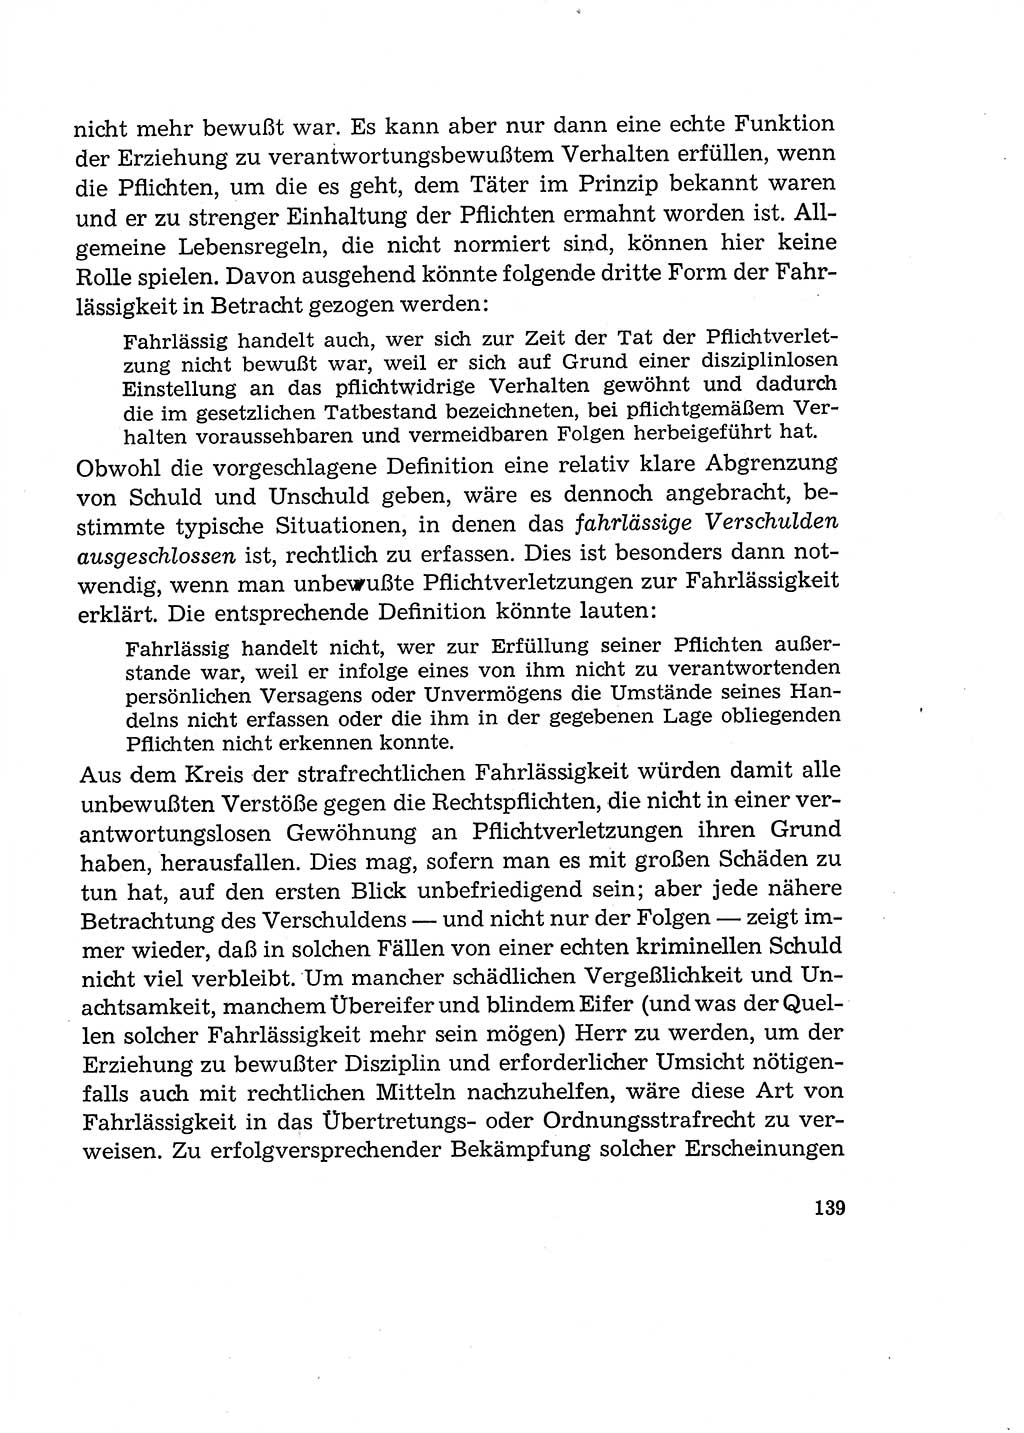 Verantwortung und Schuld im neuen Strafgesetzbuch (StGB) [Deutsche Demokratische Republik (DDR)] 1964, Seite 139 (Verantw. Sch. StGB DDR 1964, S. 139)